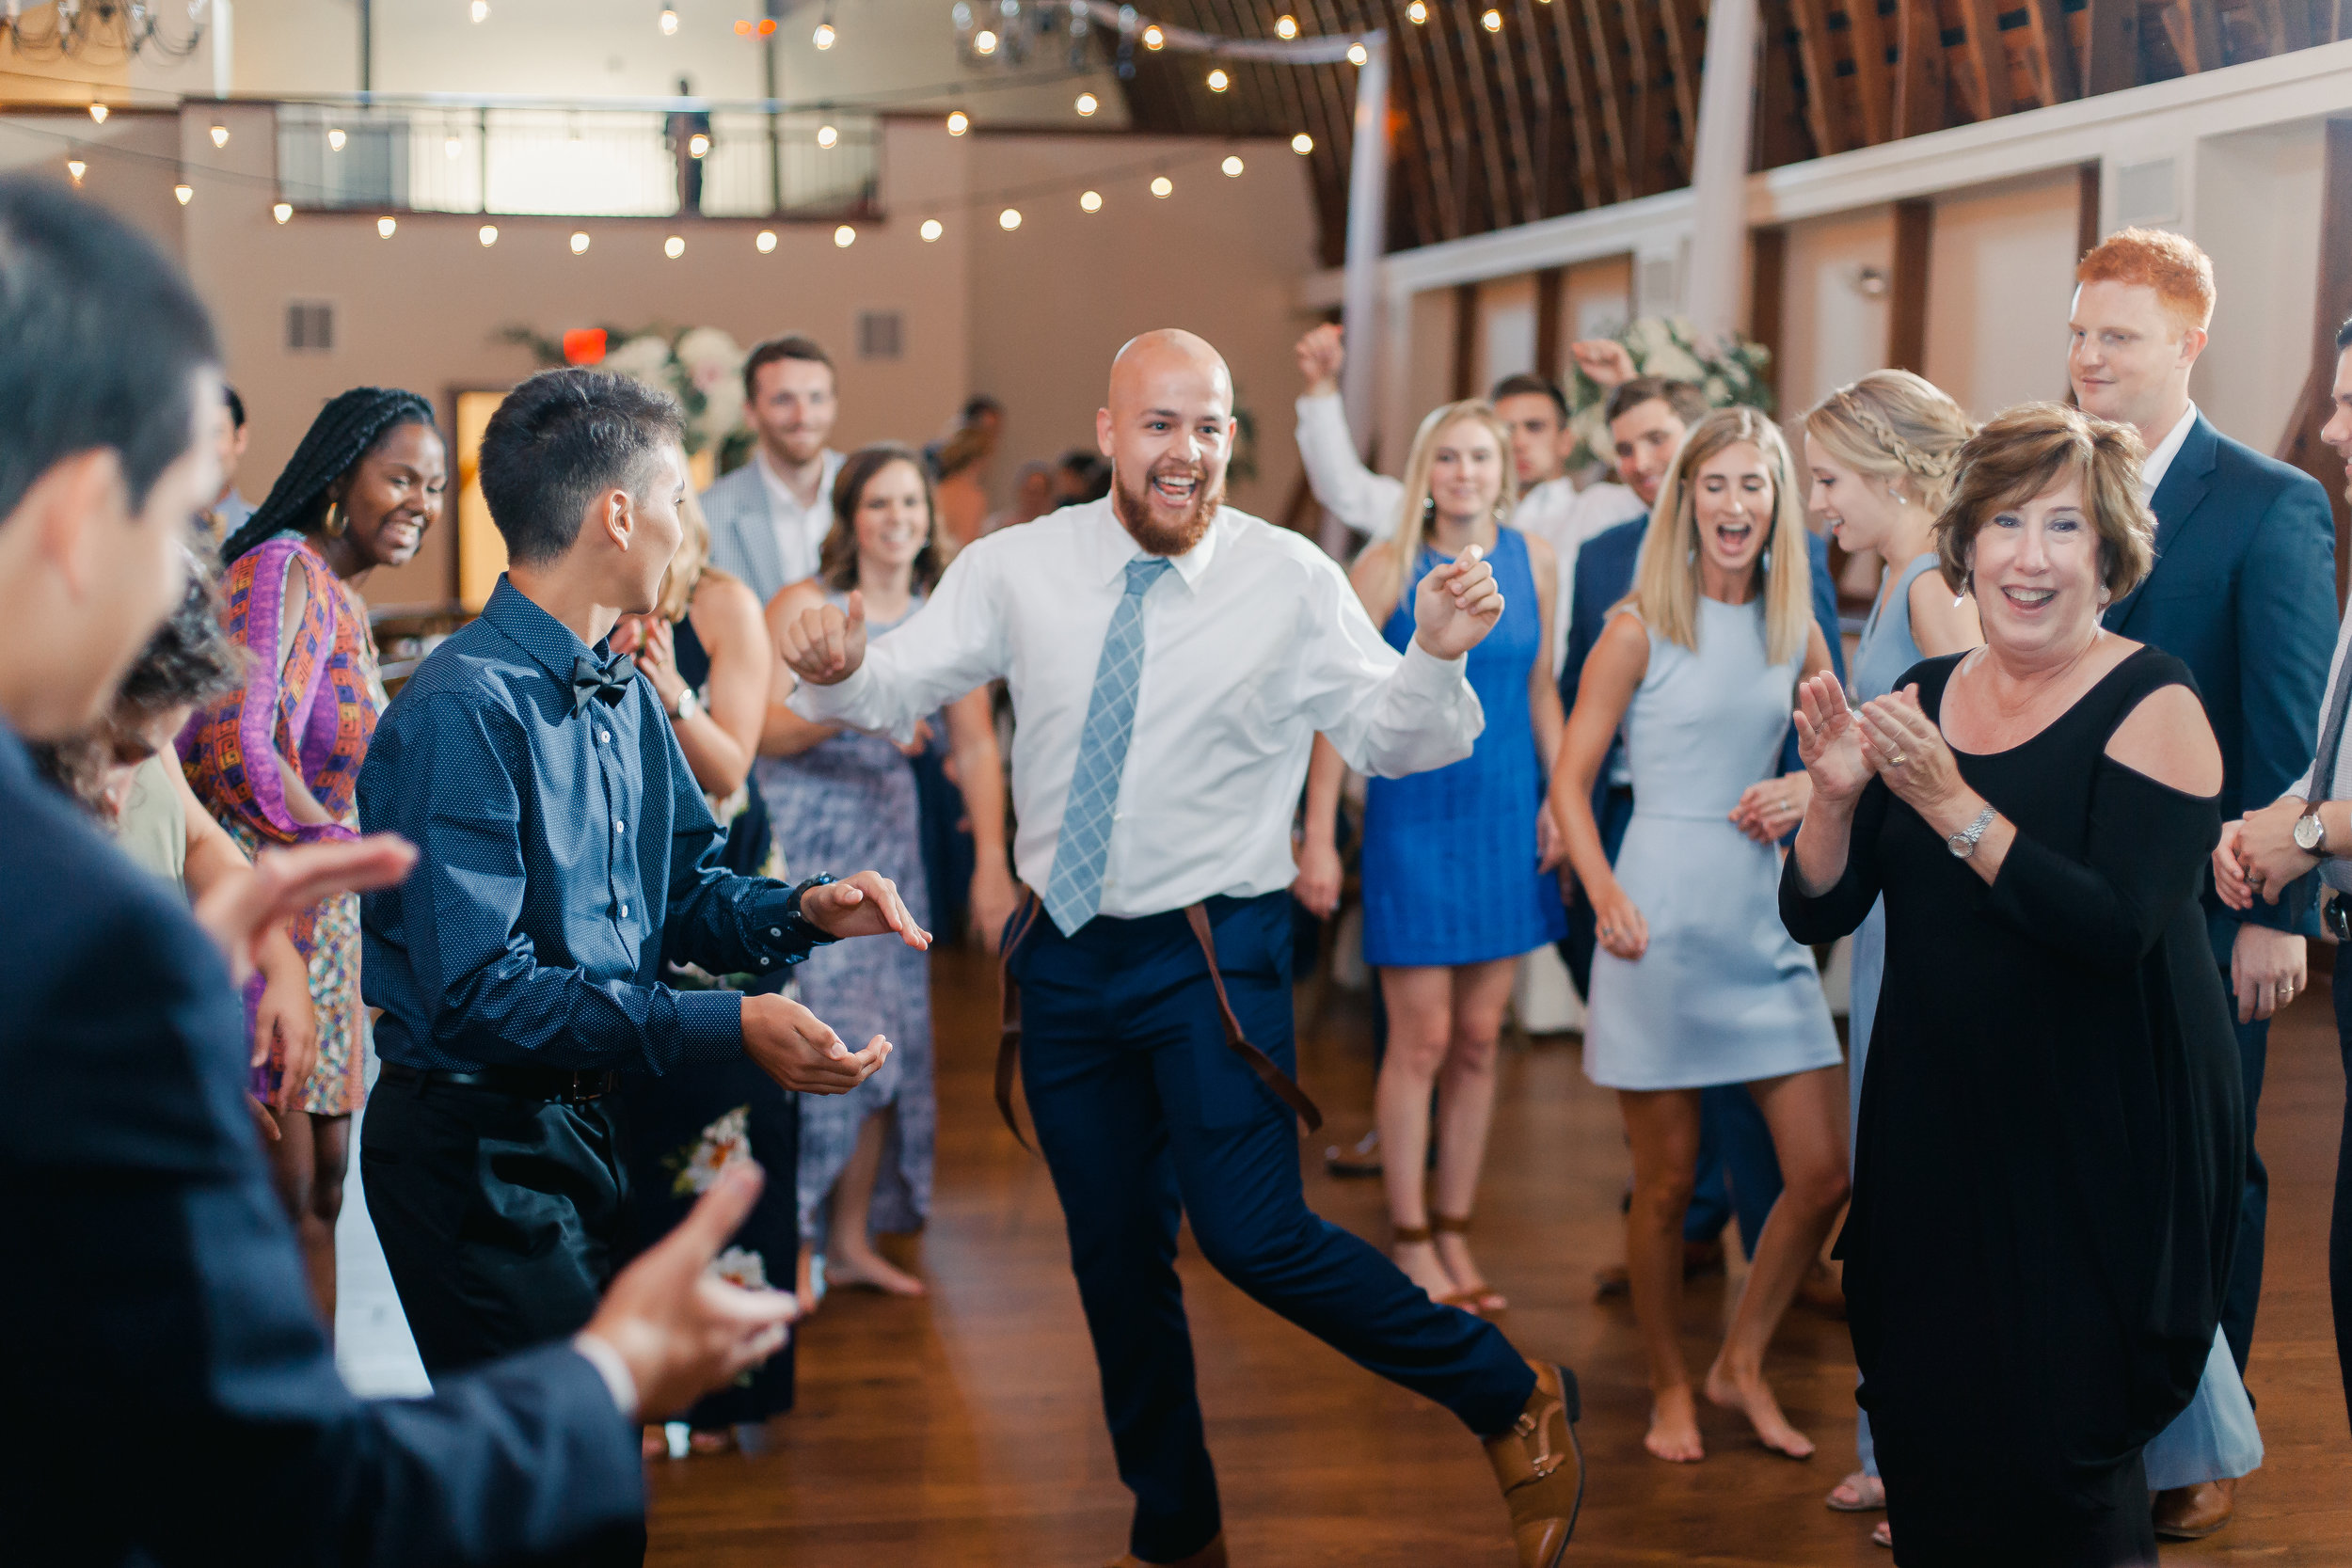 dances at wedding receptions